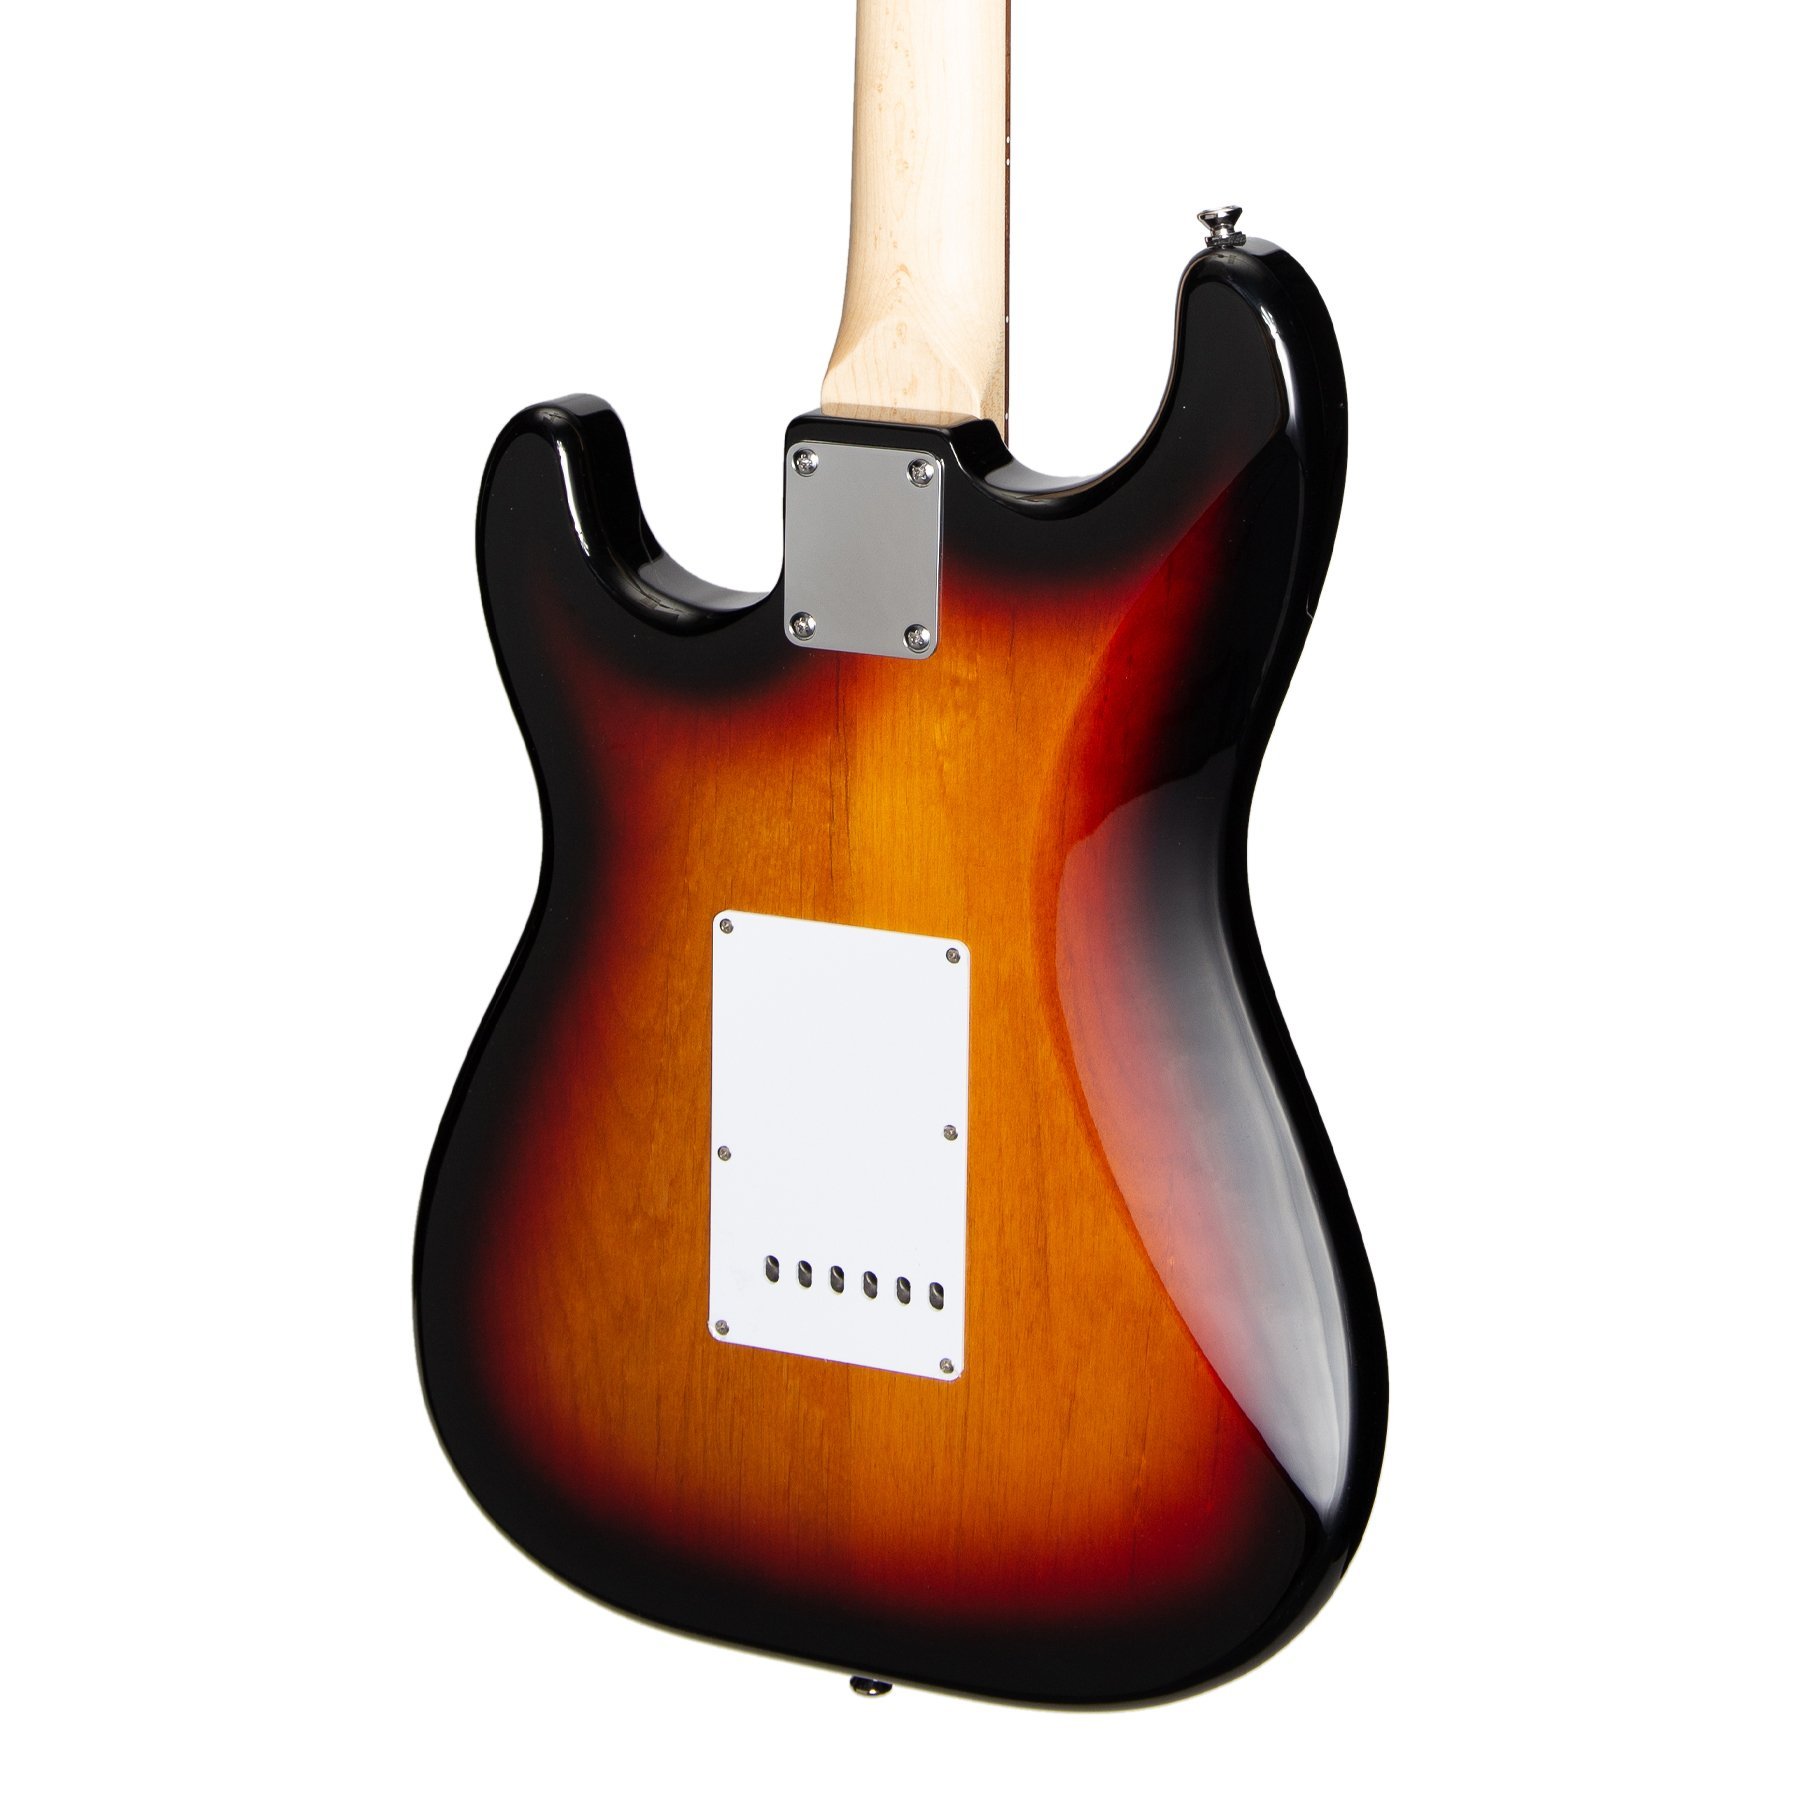 Đàn Guitar Điện Tokai - Tokai 'Traditional Series' AST-52 ST-Style Electric Guitar (Yellow Sunburst) - Hàng chính hãng